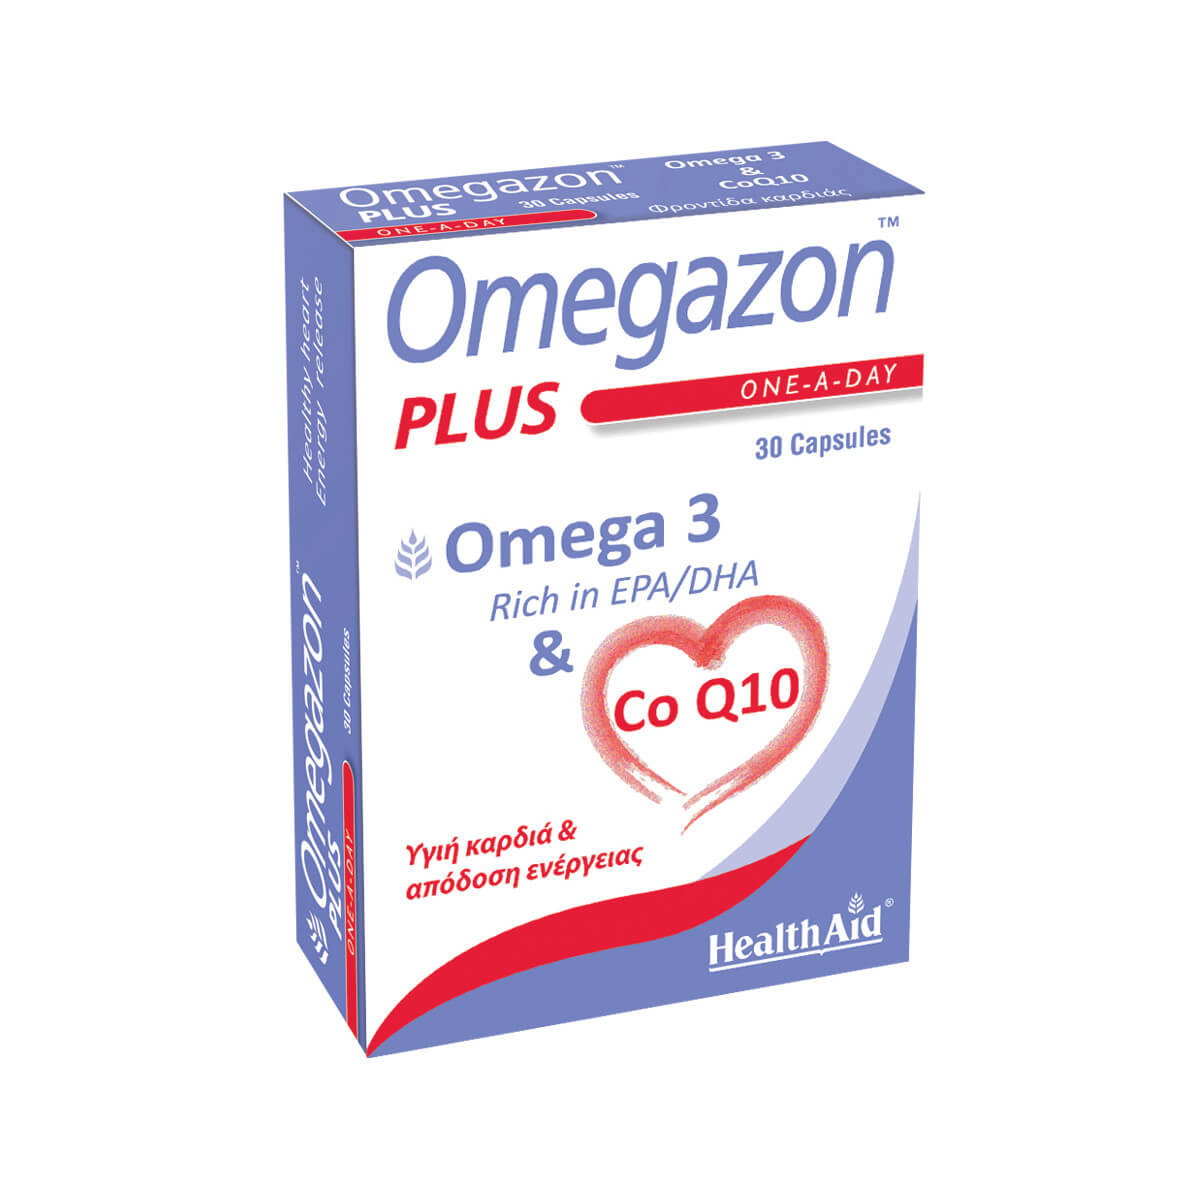 Health Aid Omegazon Plus Rich In EPA/DHA & Co Q10 30 Capsules 